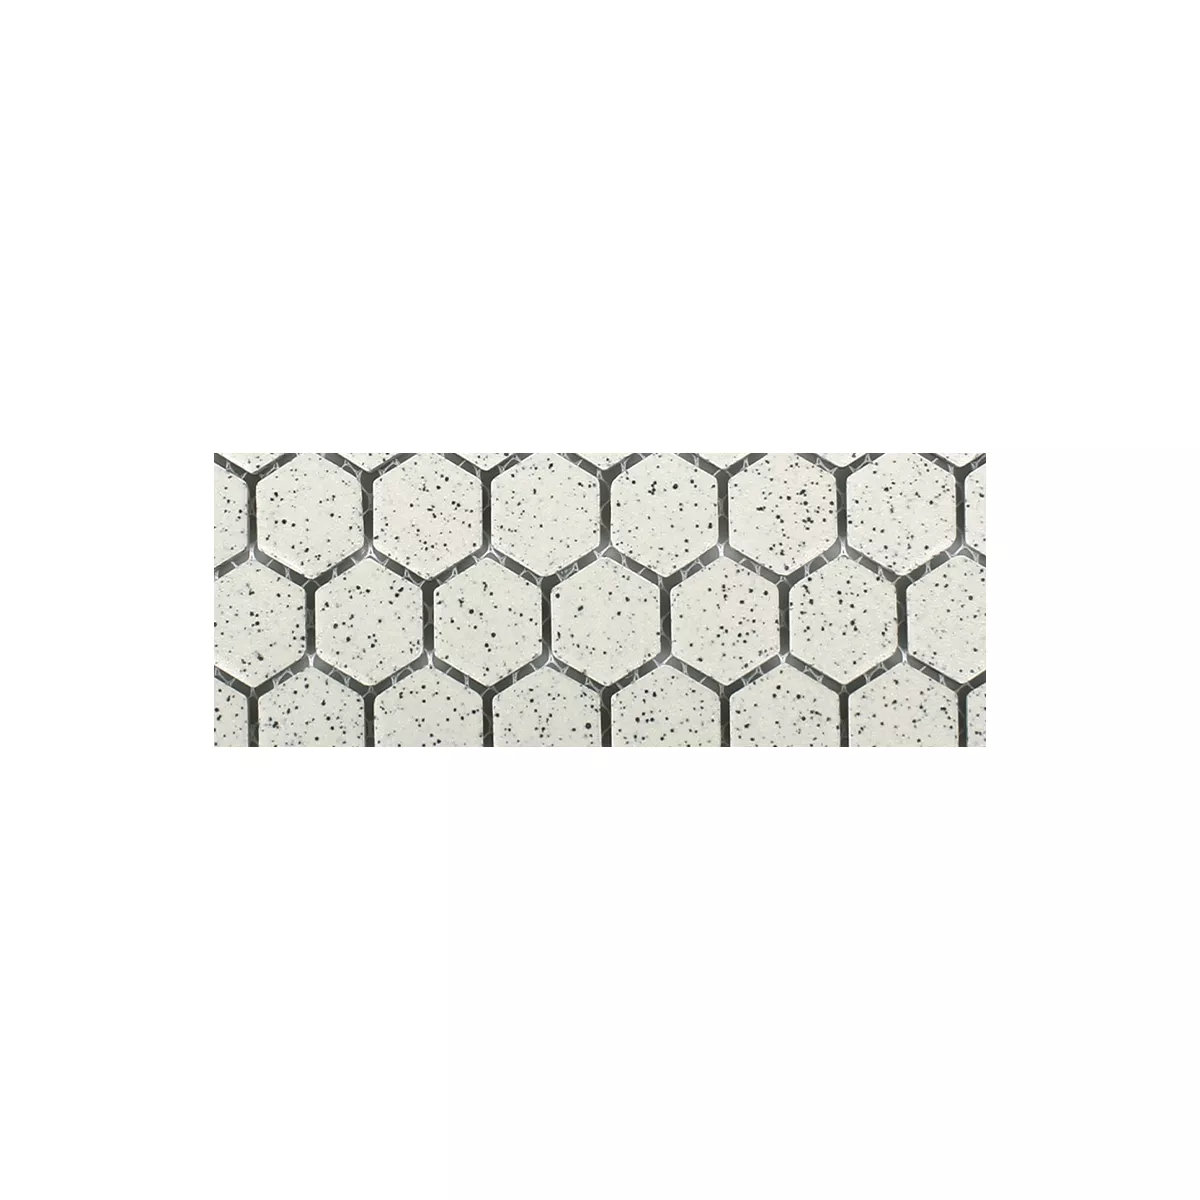 Sample Ceramic Mosaic Tiles Luanda Beige Hexagon